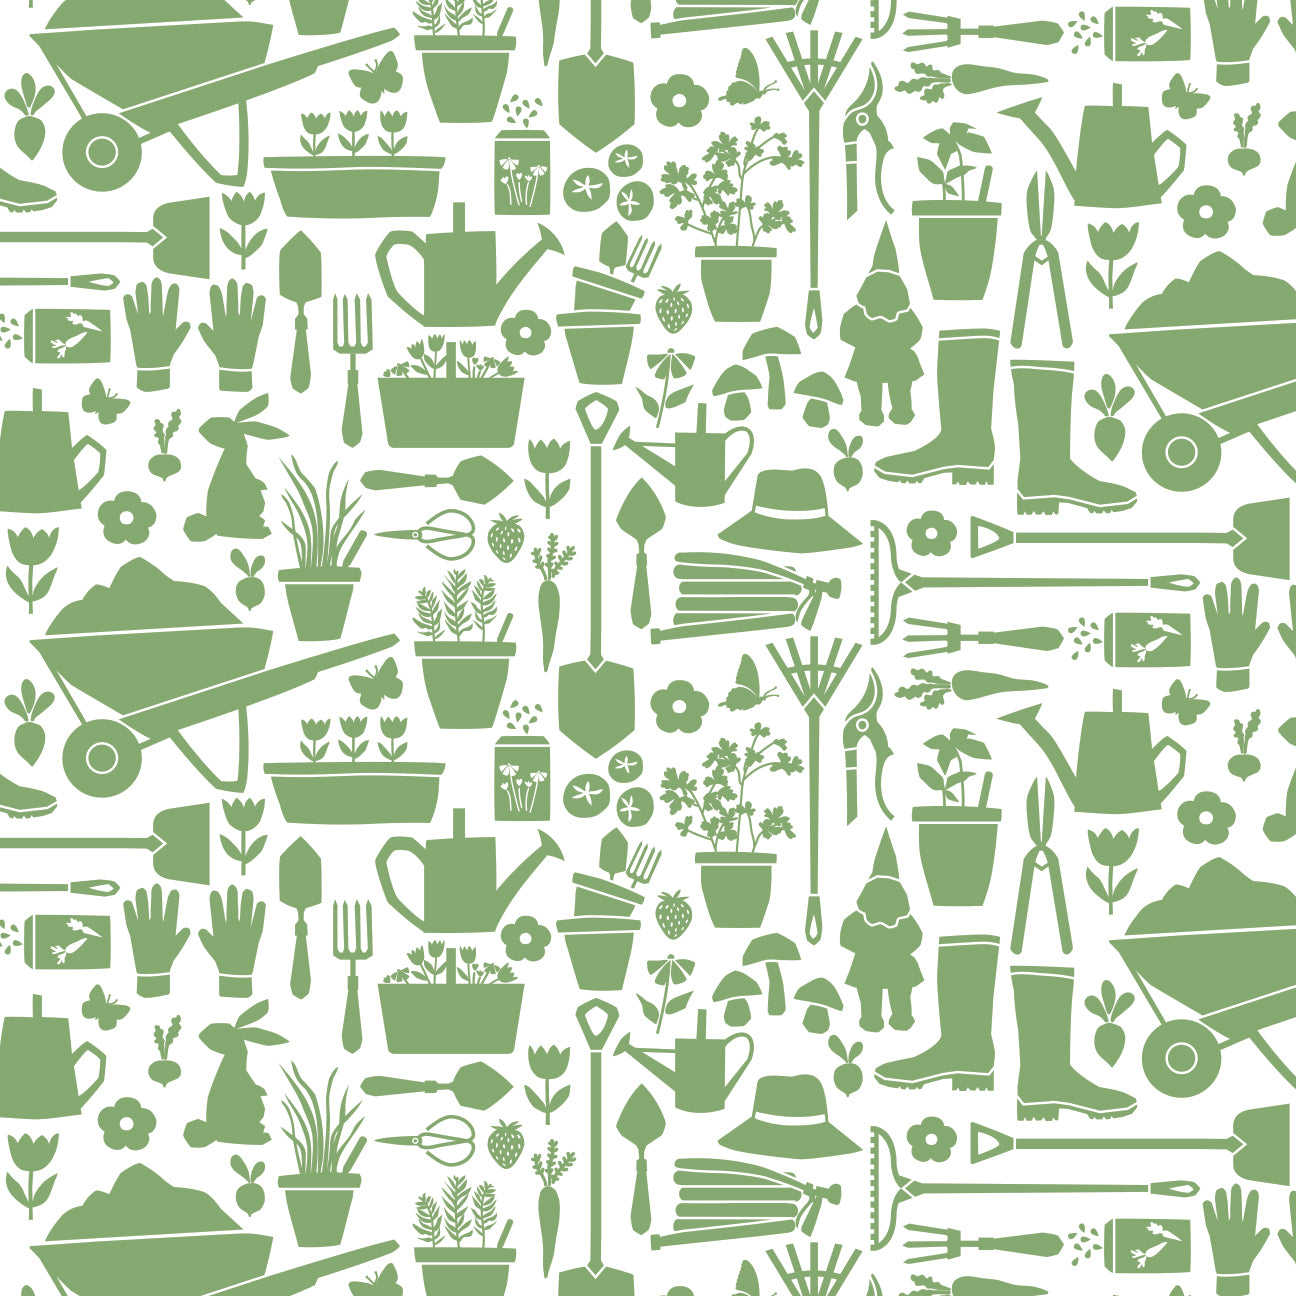 Long-Sleeve Tee - Garden Tools Green